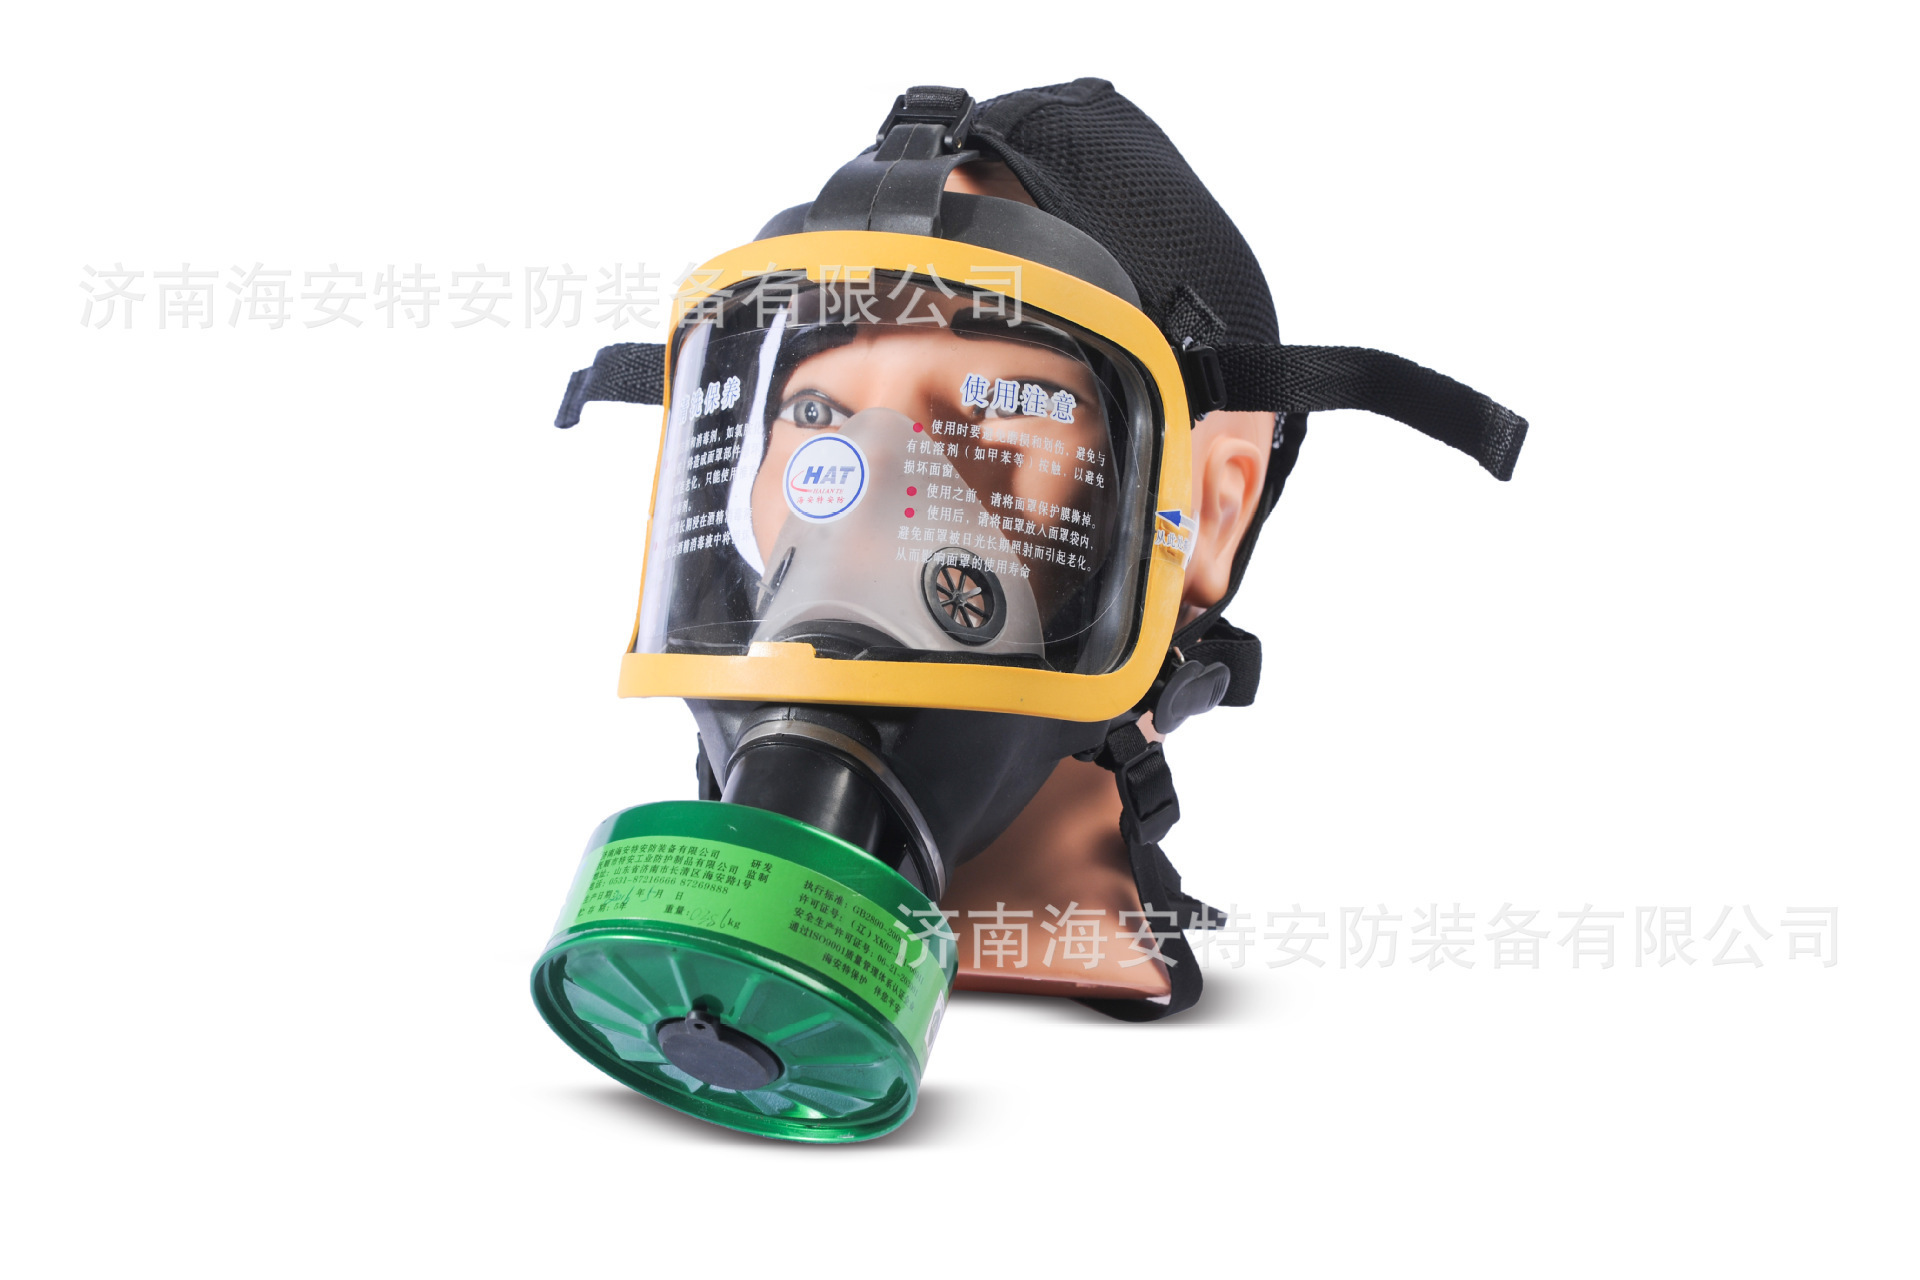 Masque à gaz - Masque chimique - Anti-gaz - Ref 3403541 Image 3